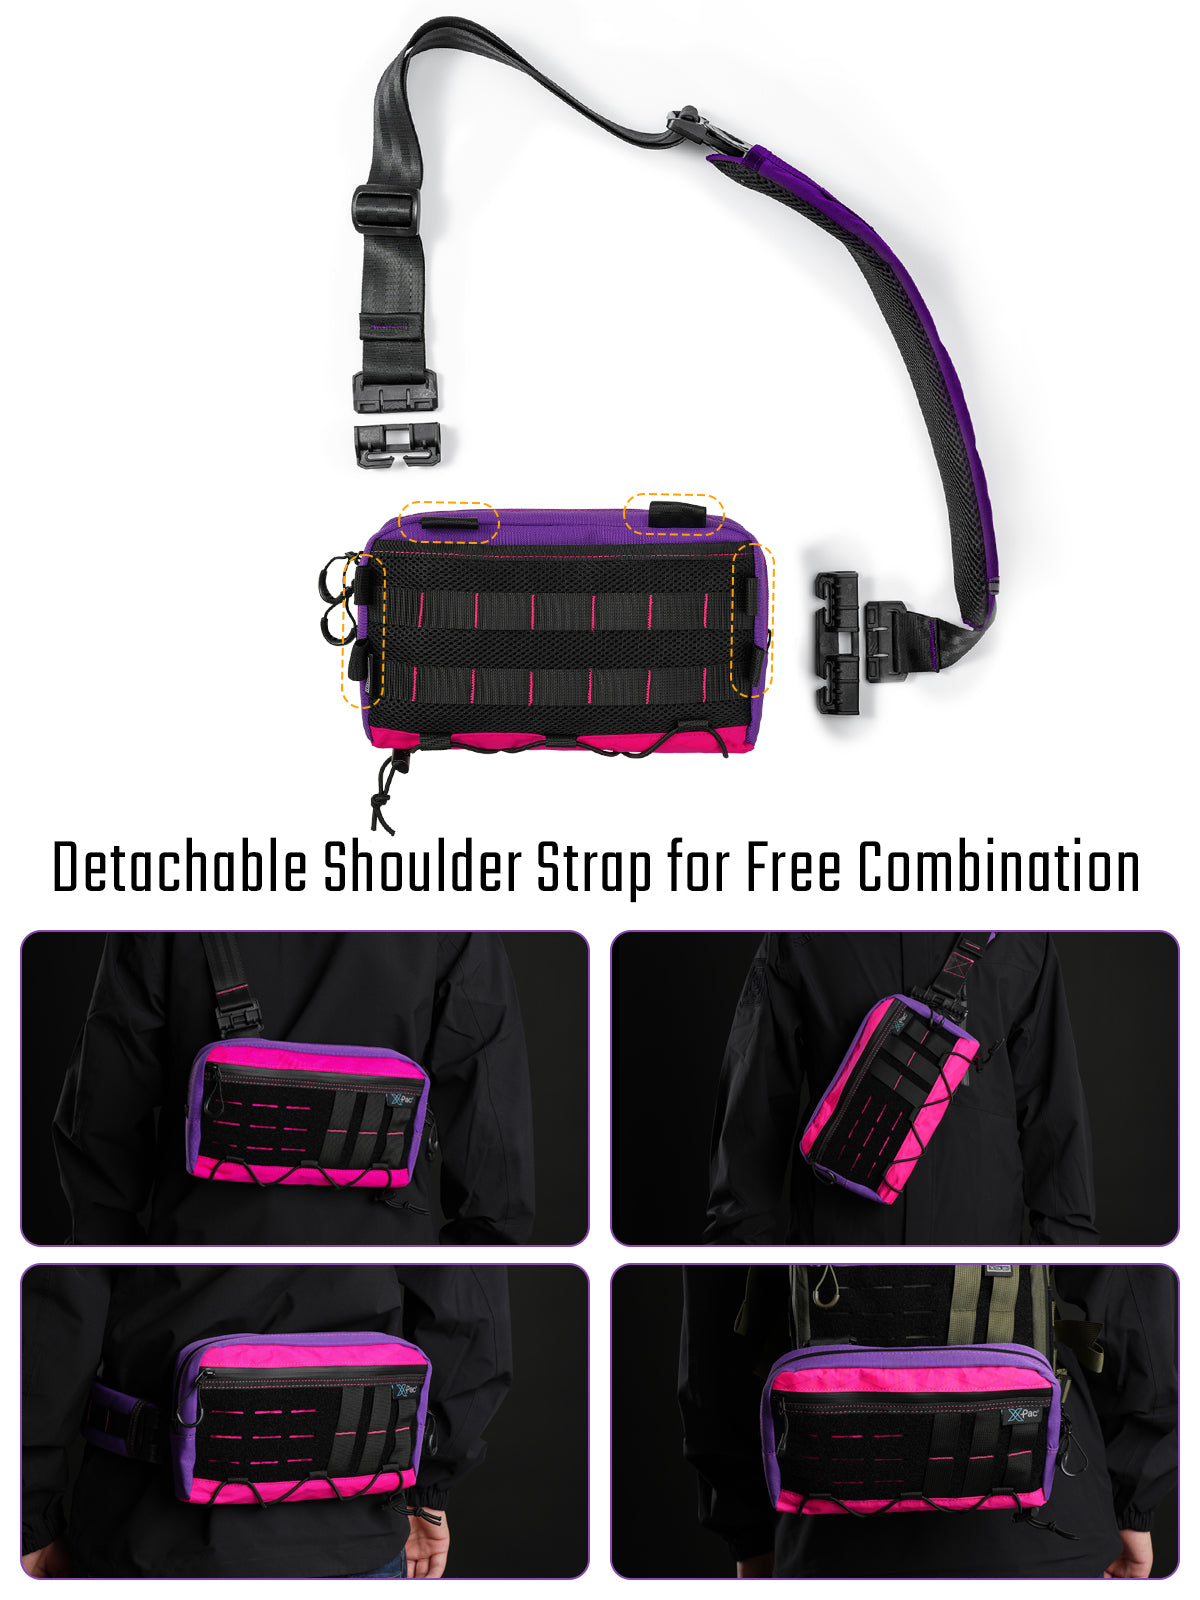 Cache L3 EDC Shoulder Bag （X-pac Pink）